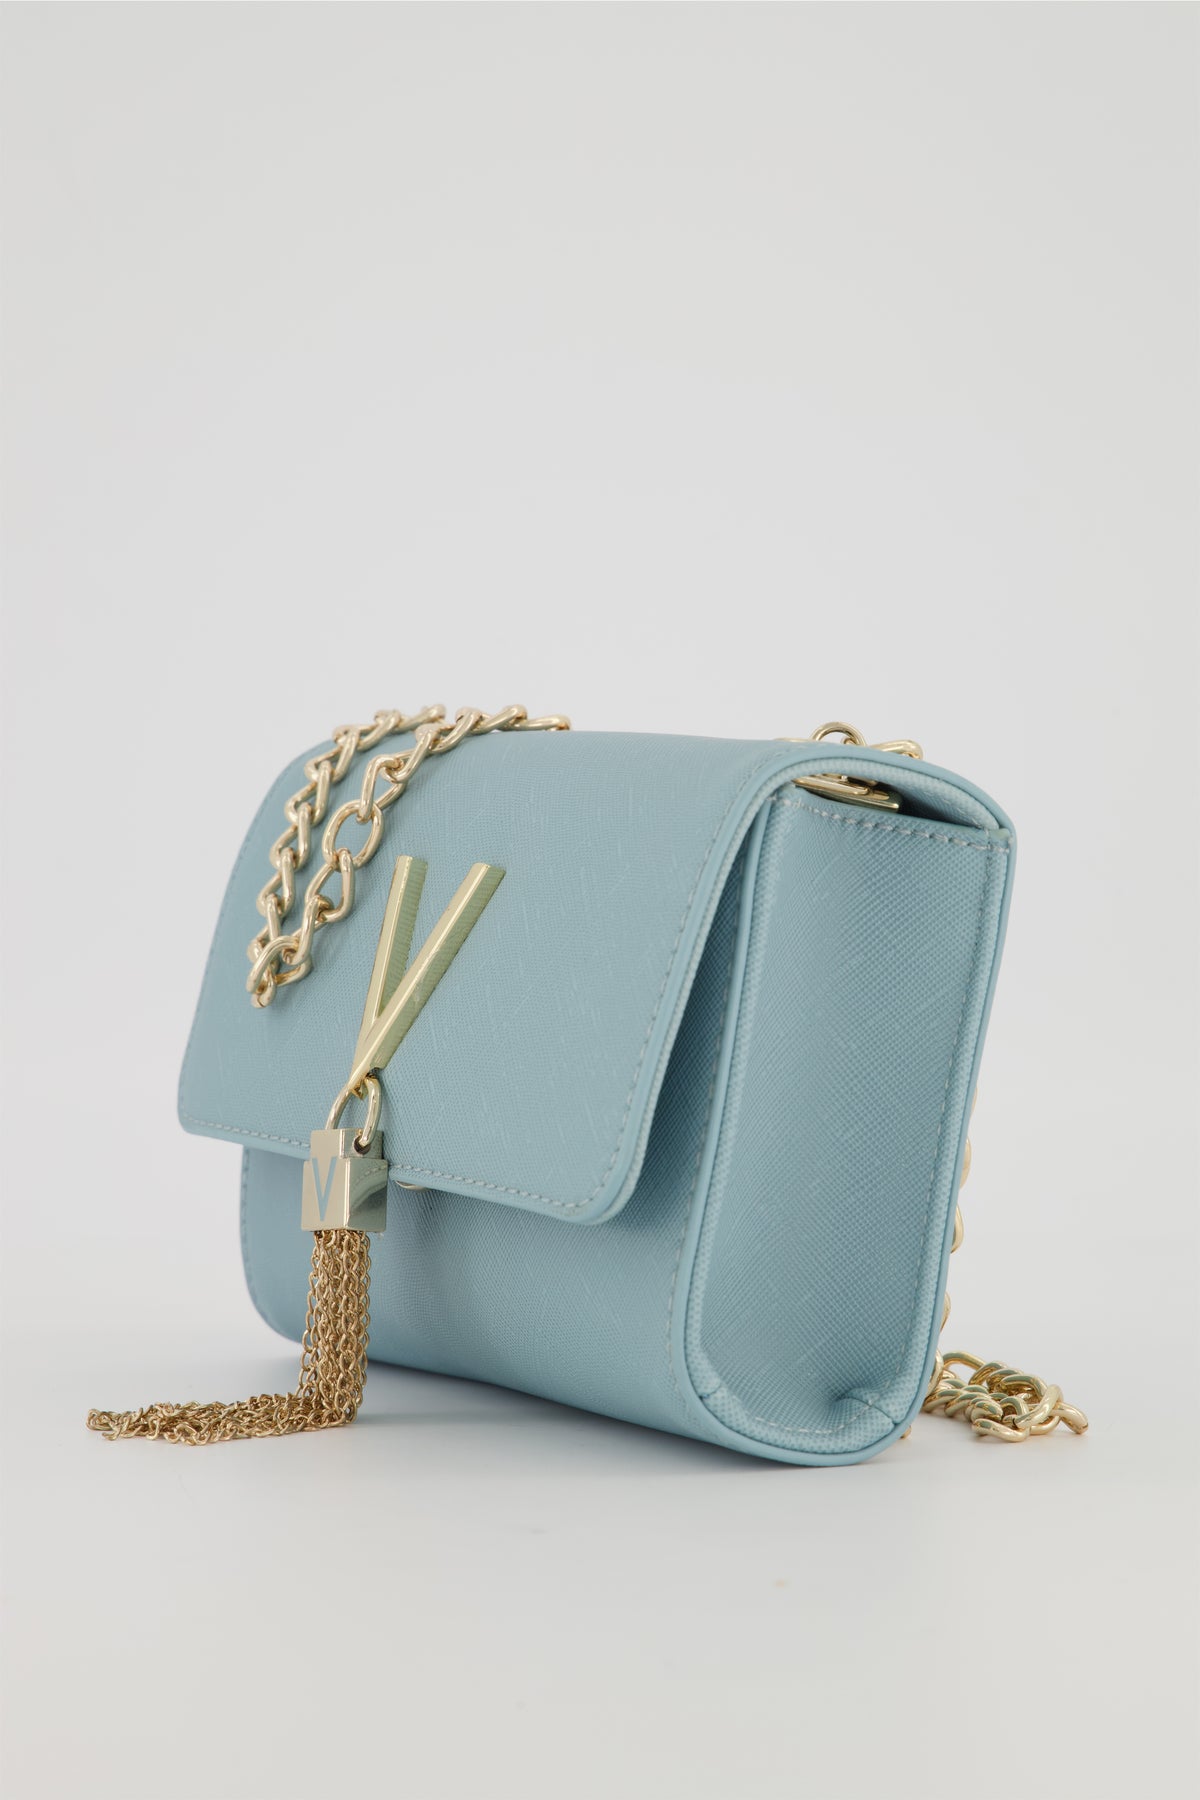 Valentino Bags - Divina Clutch Blau (blu) : : Fashion